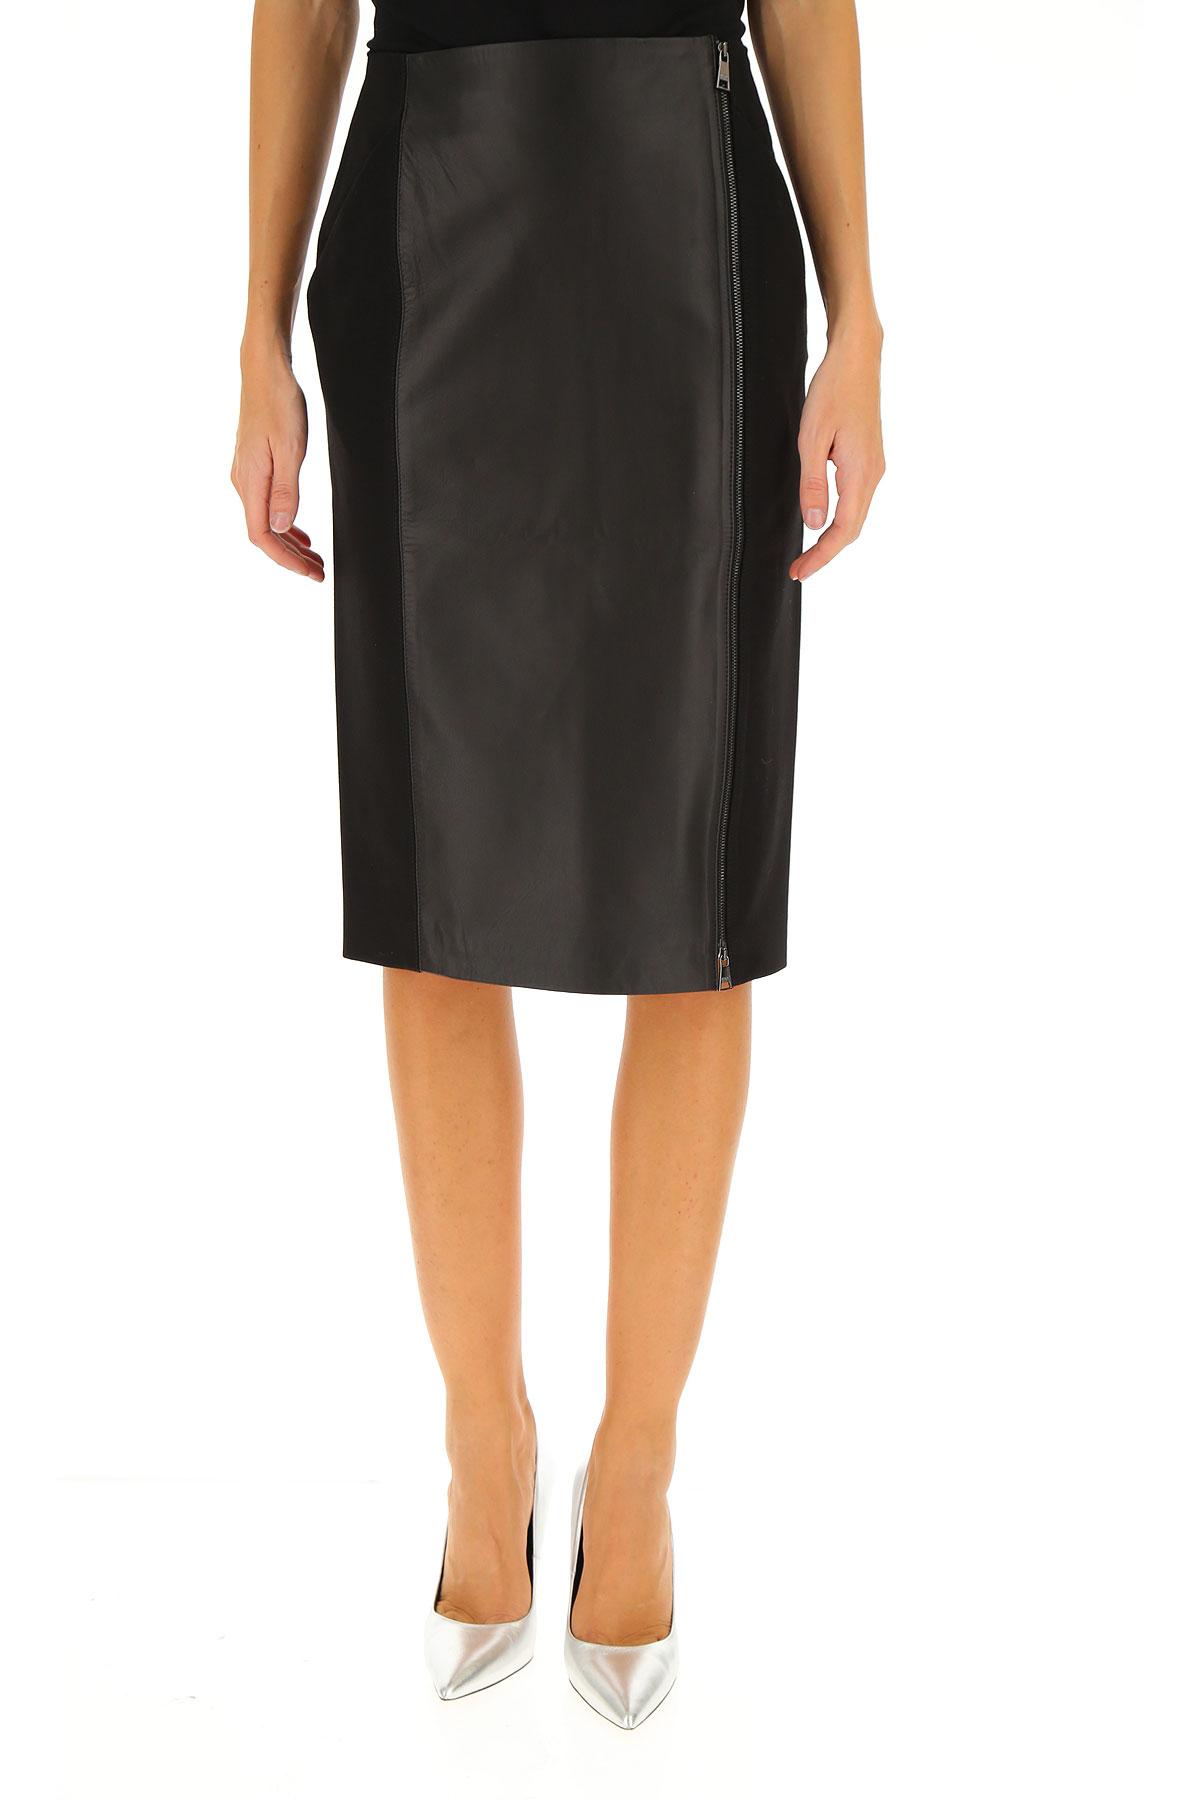 Karl Lagerfeld Leather Skirt For Women in Black - Lyst